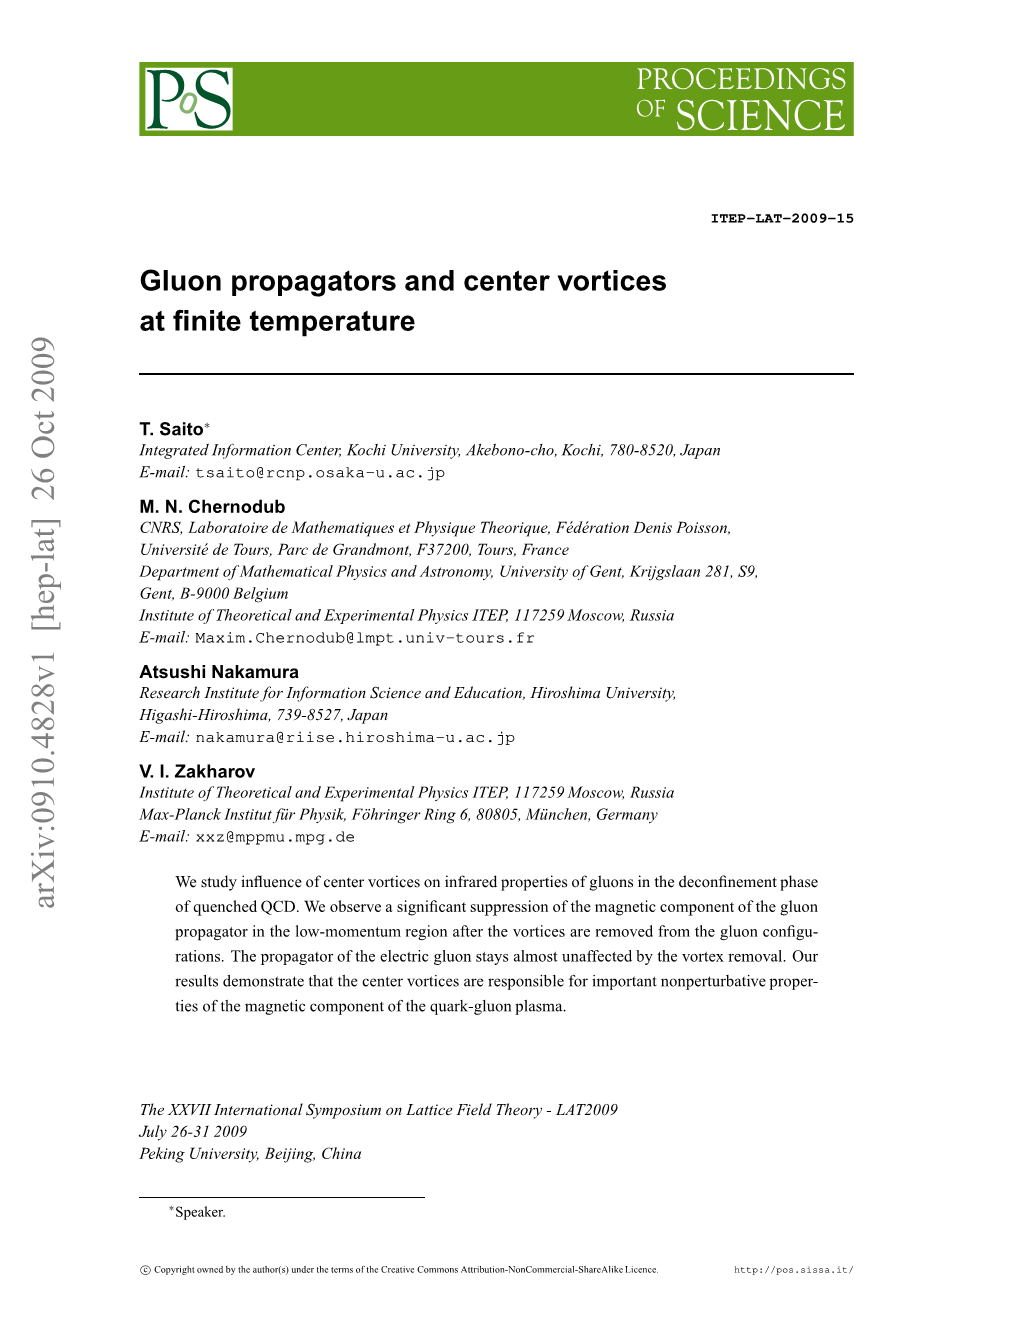 Gluon Propagators and Center Vortices at Finite Temperature